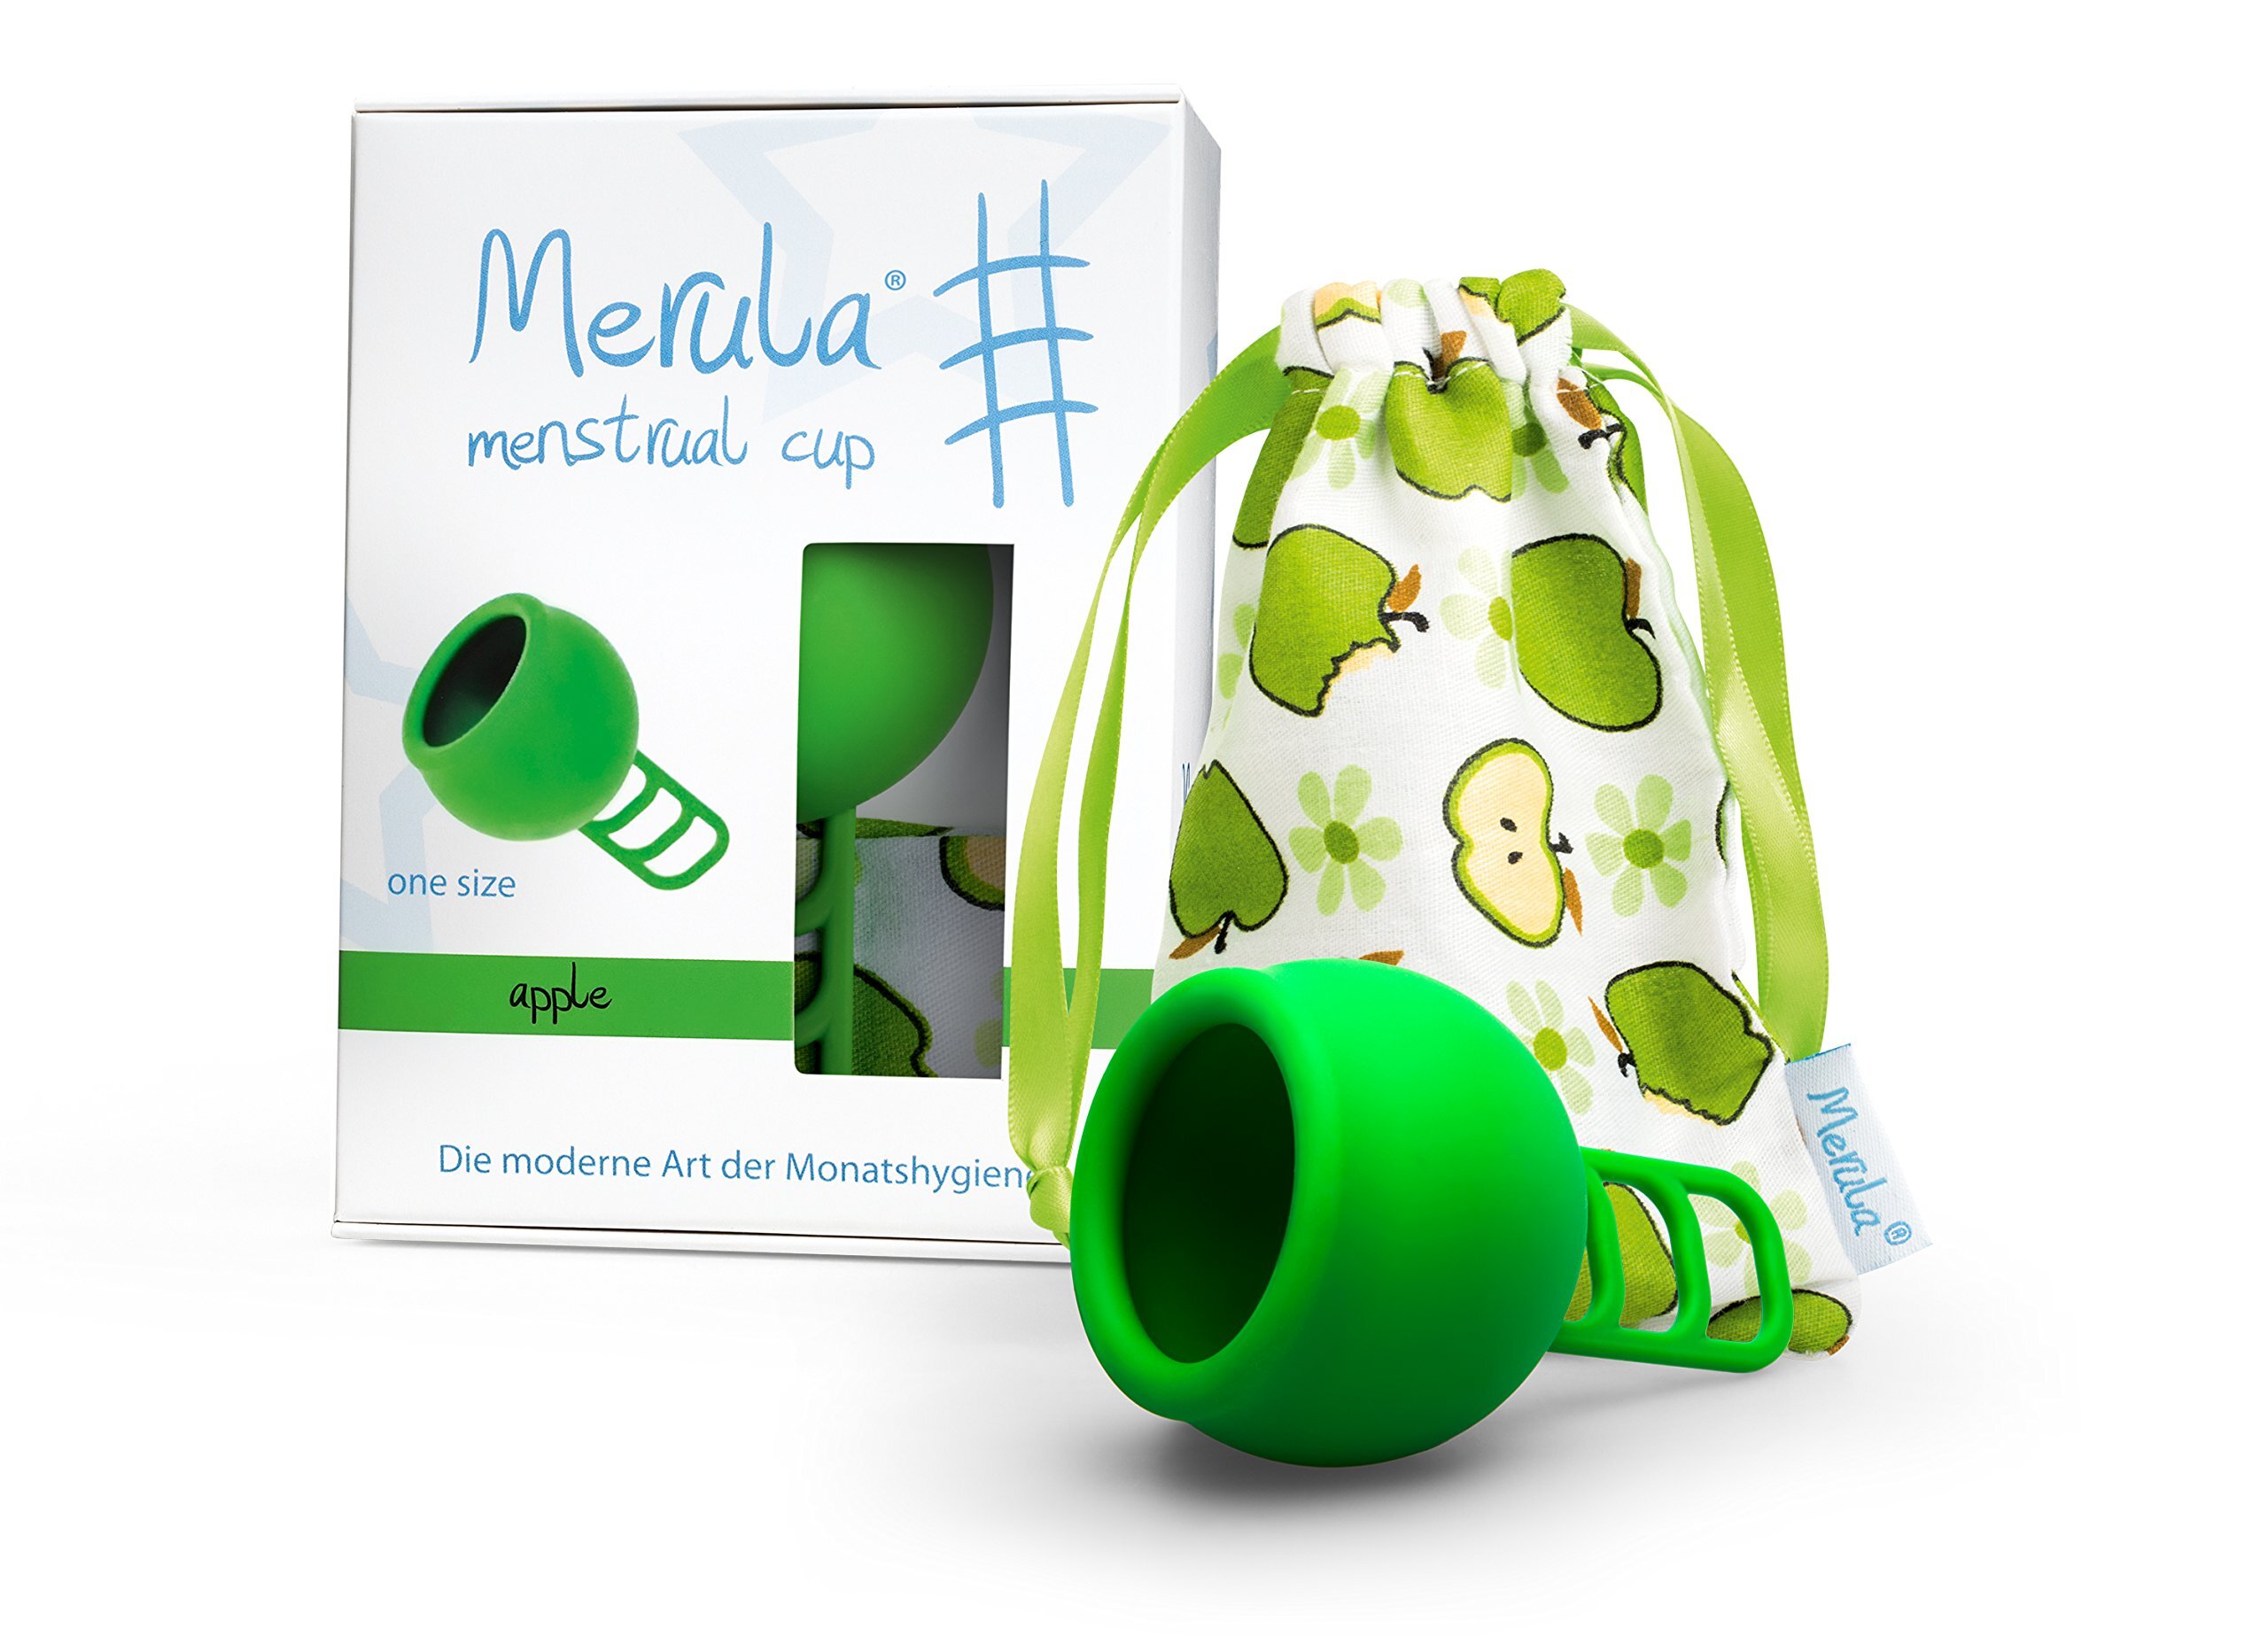 Merula Herbruikbare Menstruatiecup - appel groen